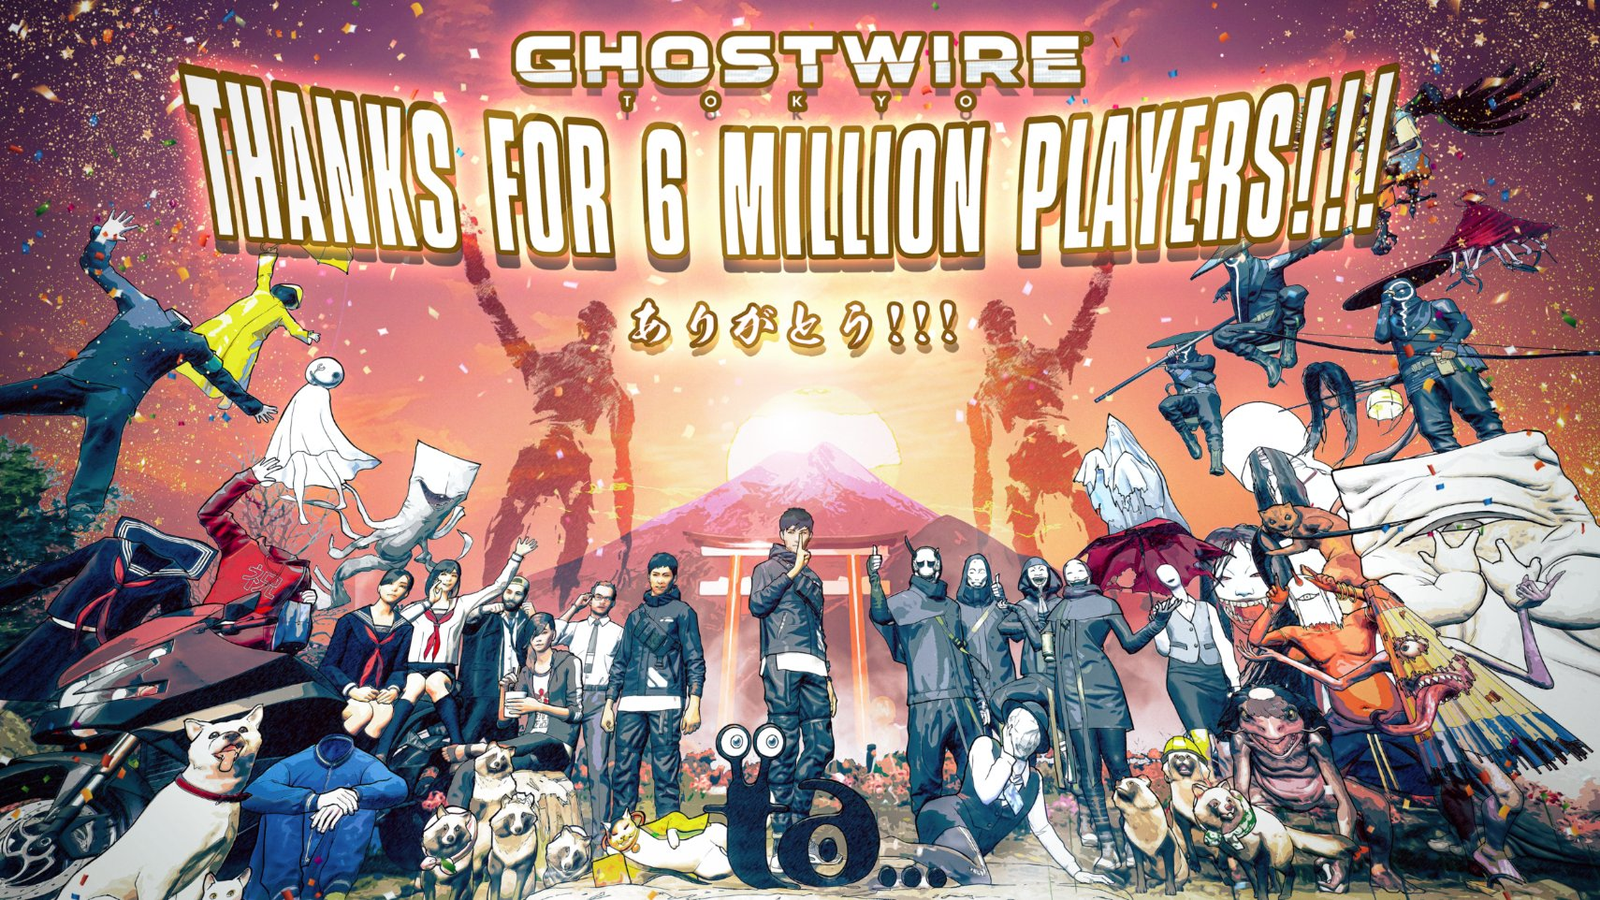 Jogo Grátis: Ghostwire Tokyo está disponível para assinantes  Prime